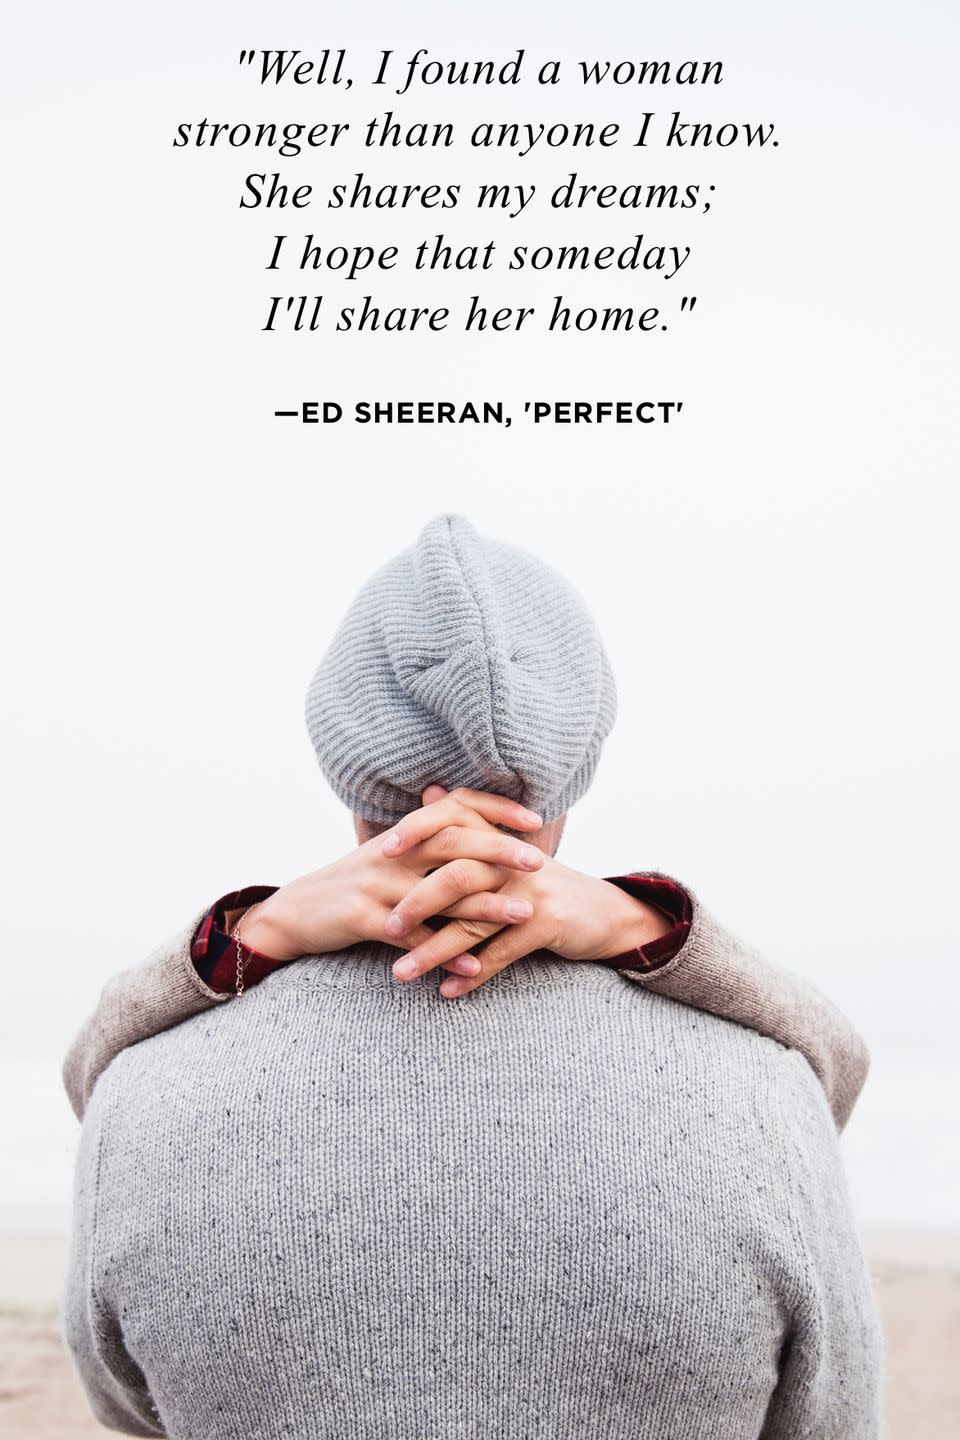 9) Ed Sheeran, 'Perfect'